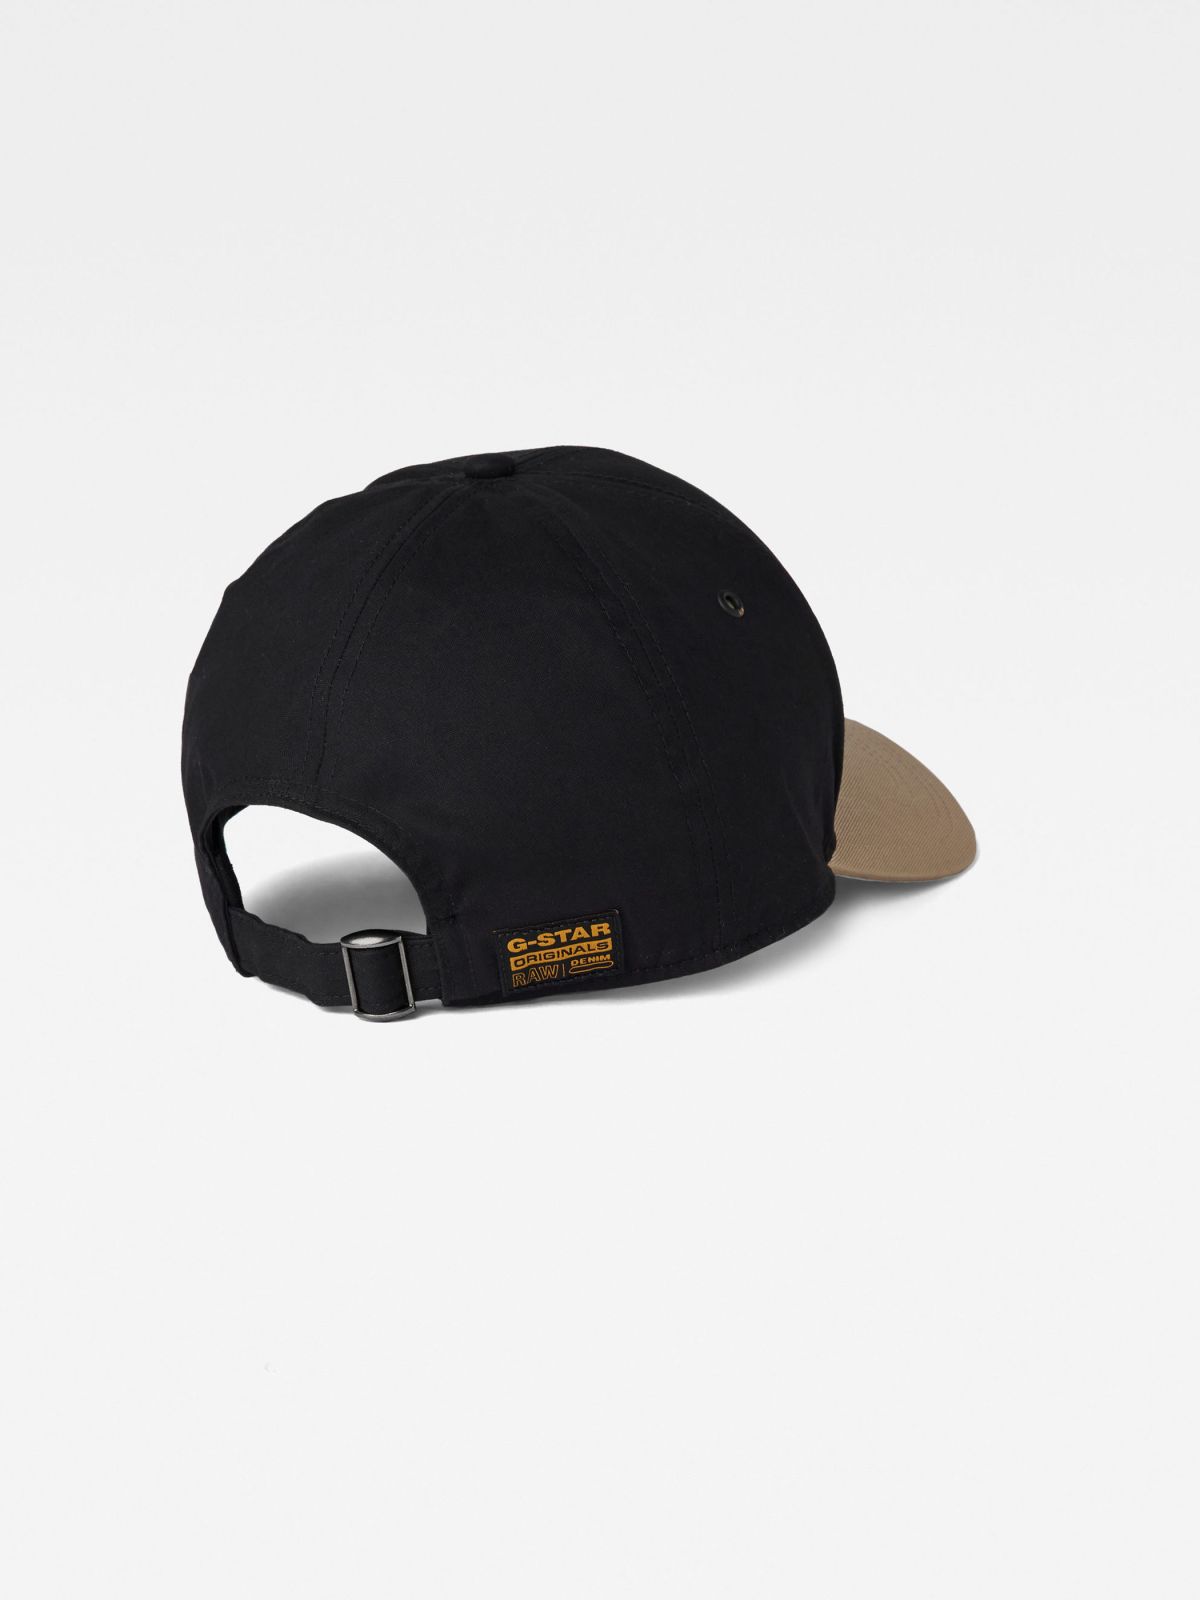  כובע מצחייה עם רקמת לוגו / גברים של G-STAR